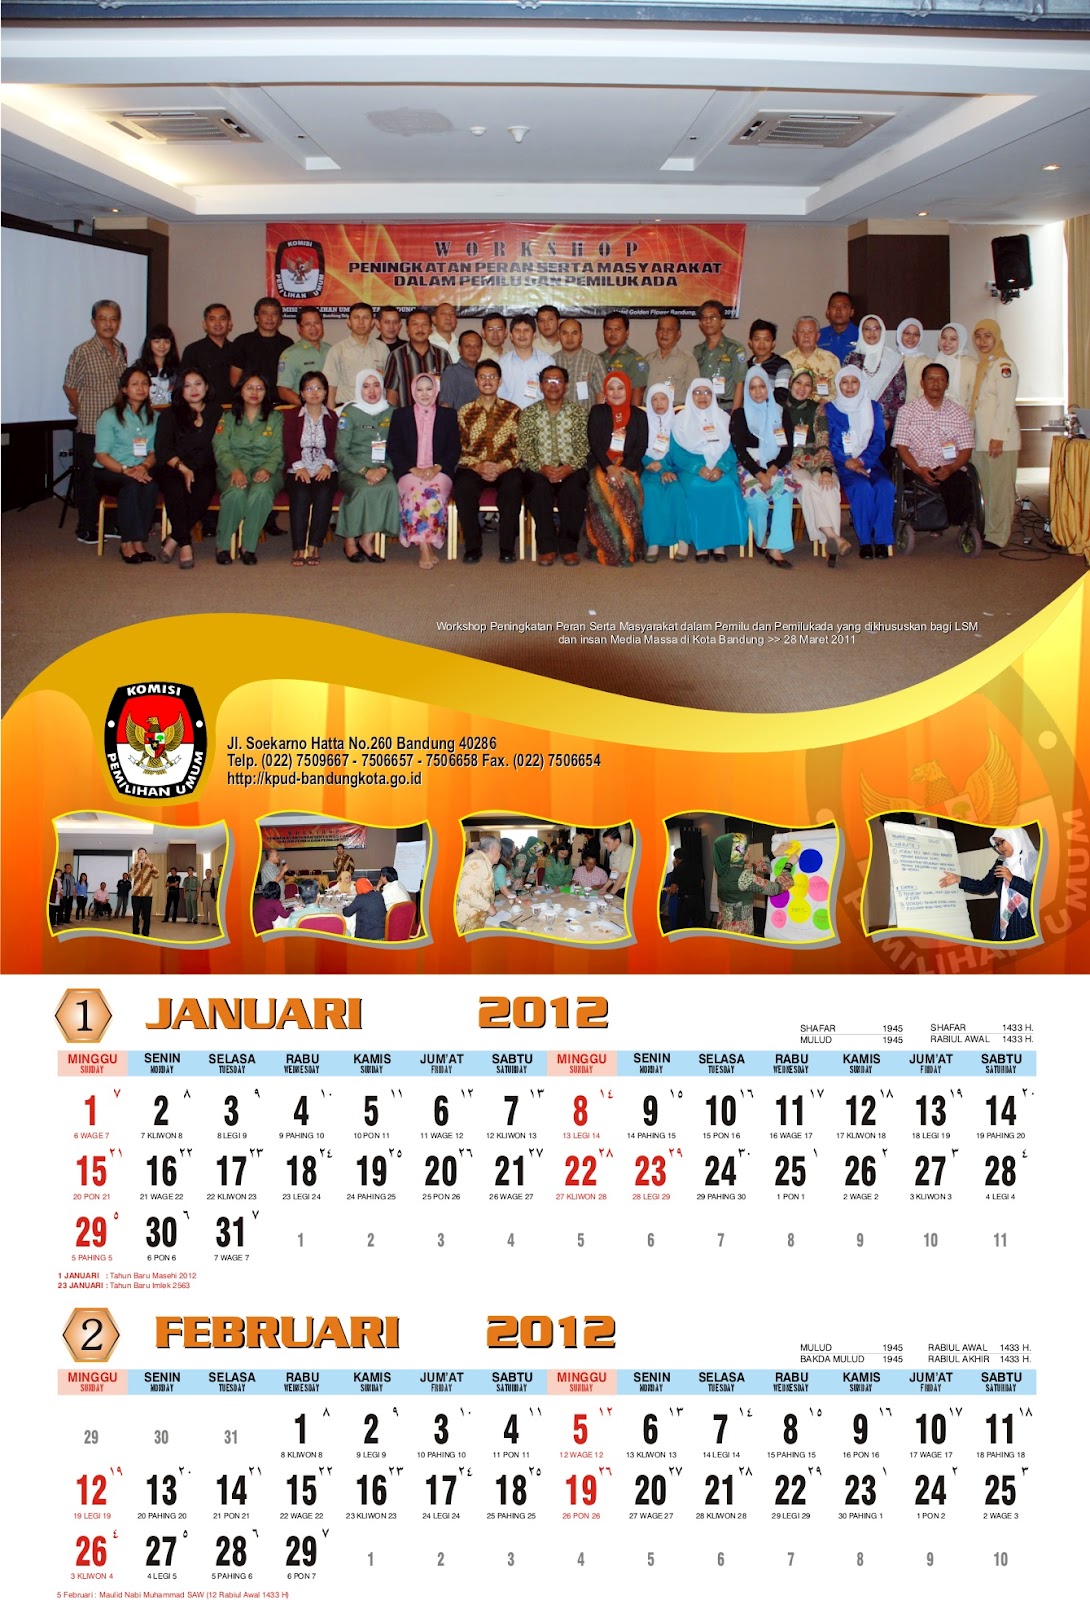 Pengadaan Kalender Agenda dan Plakat Di KPU Kota Bandung 